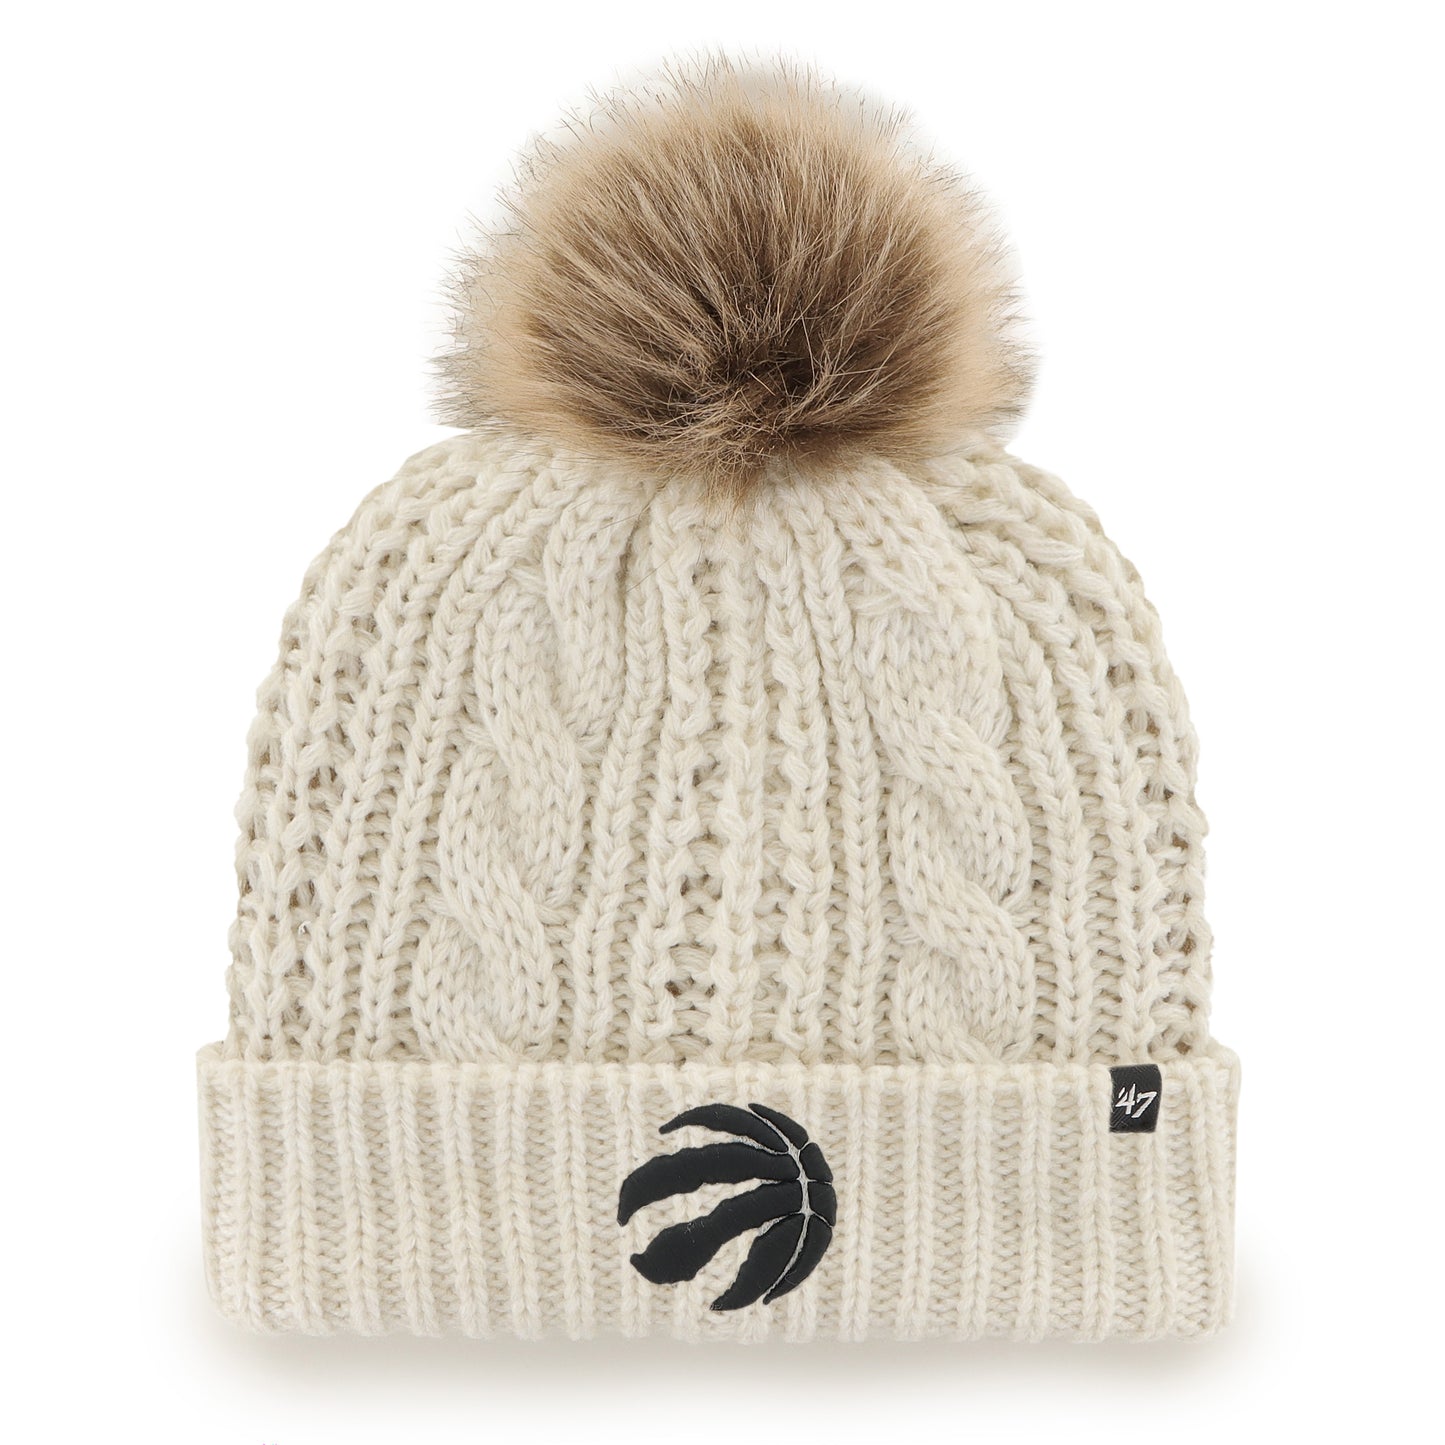 47 Meeko Cuff Knit Hat Toronto Raptors (Women's)